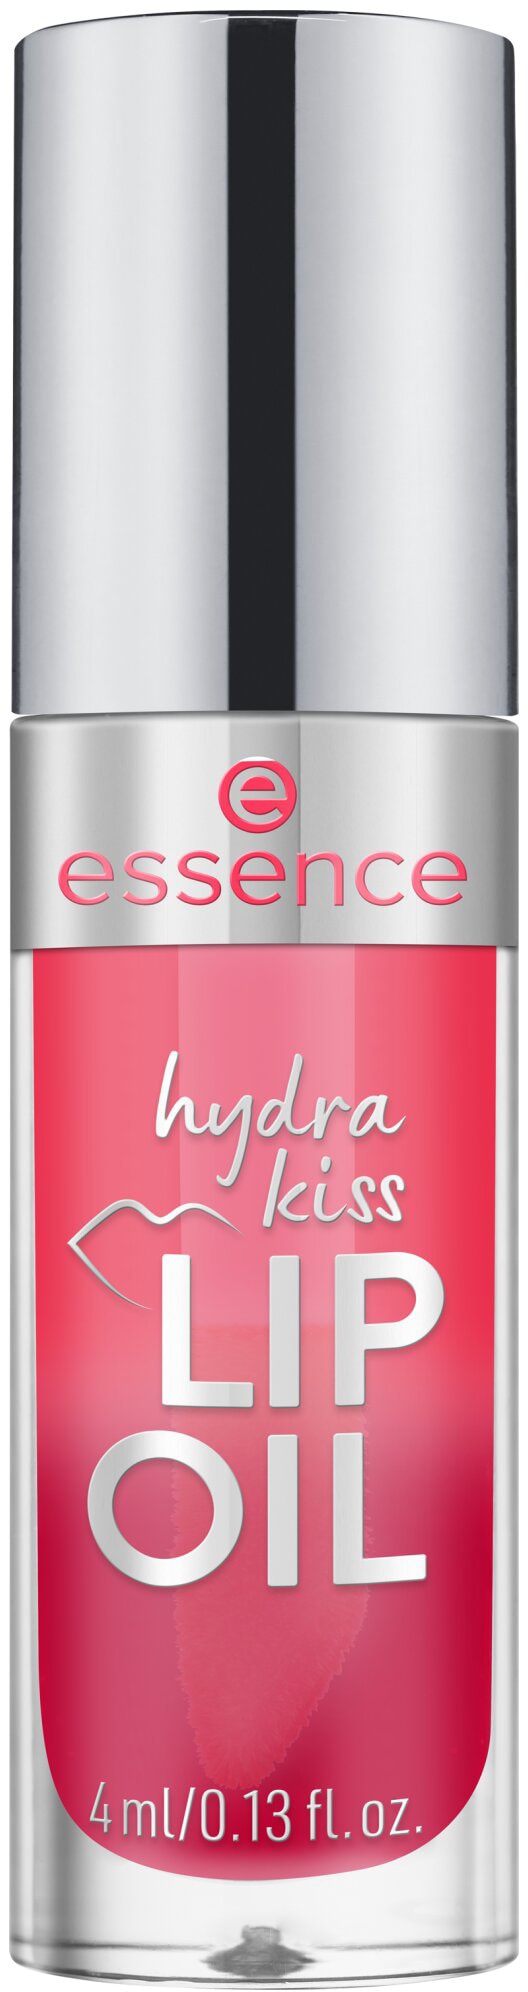 Essence Lipgloss »hydra kiss LIP OIL«, (Set, 3 tlg.)